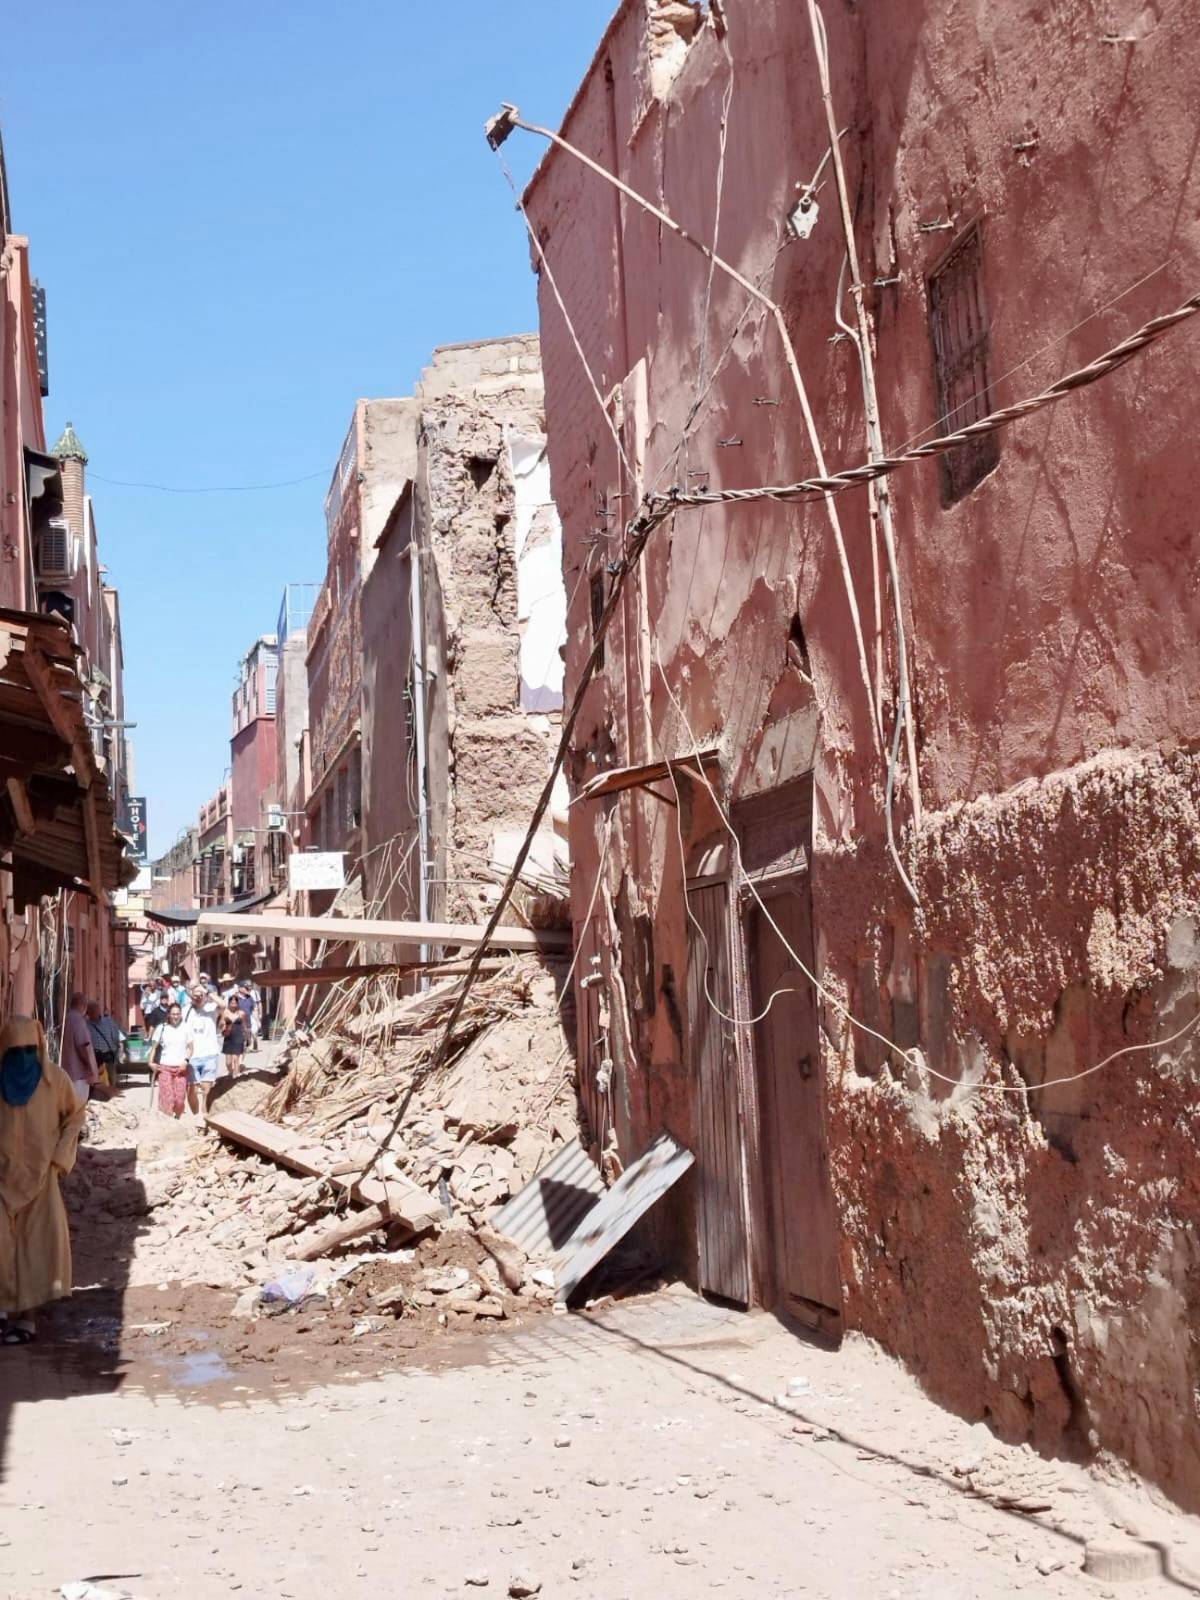 Danni, vittime, epicentro: cosa sappiamo sul terremoto in Marocco